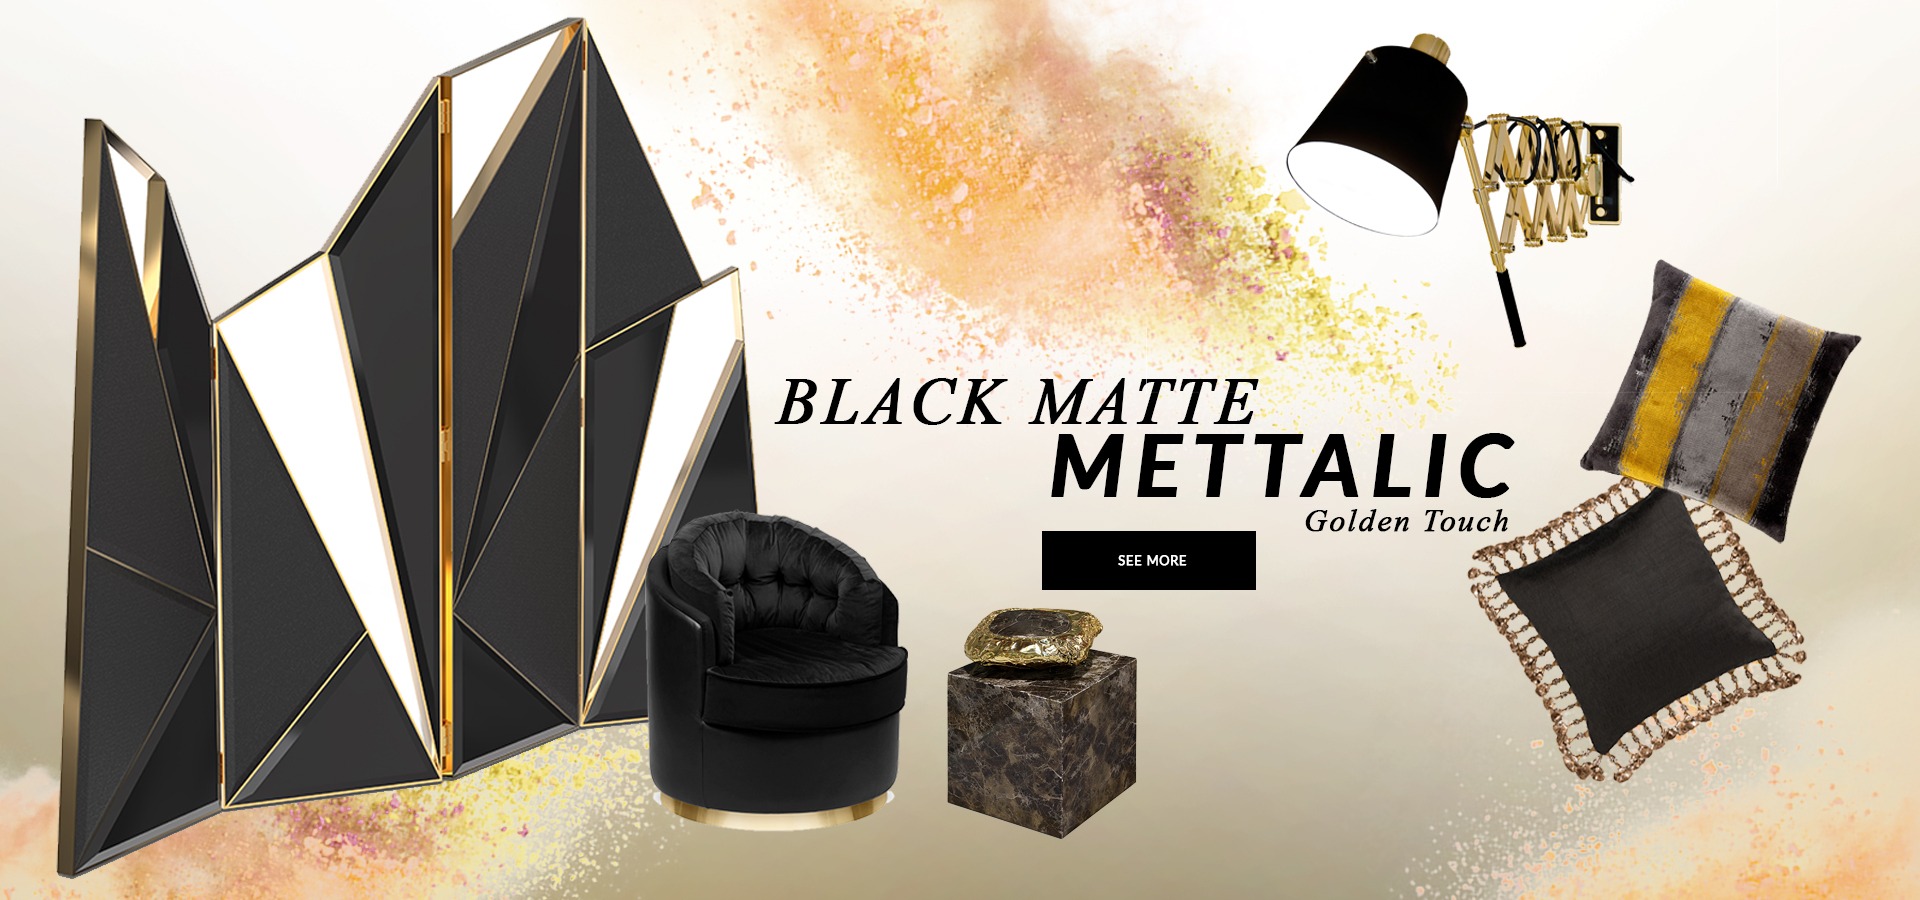 BlackMatte Mettalic Black Matte